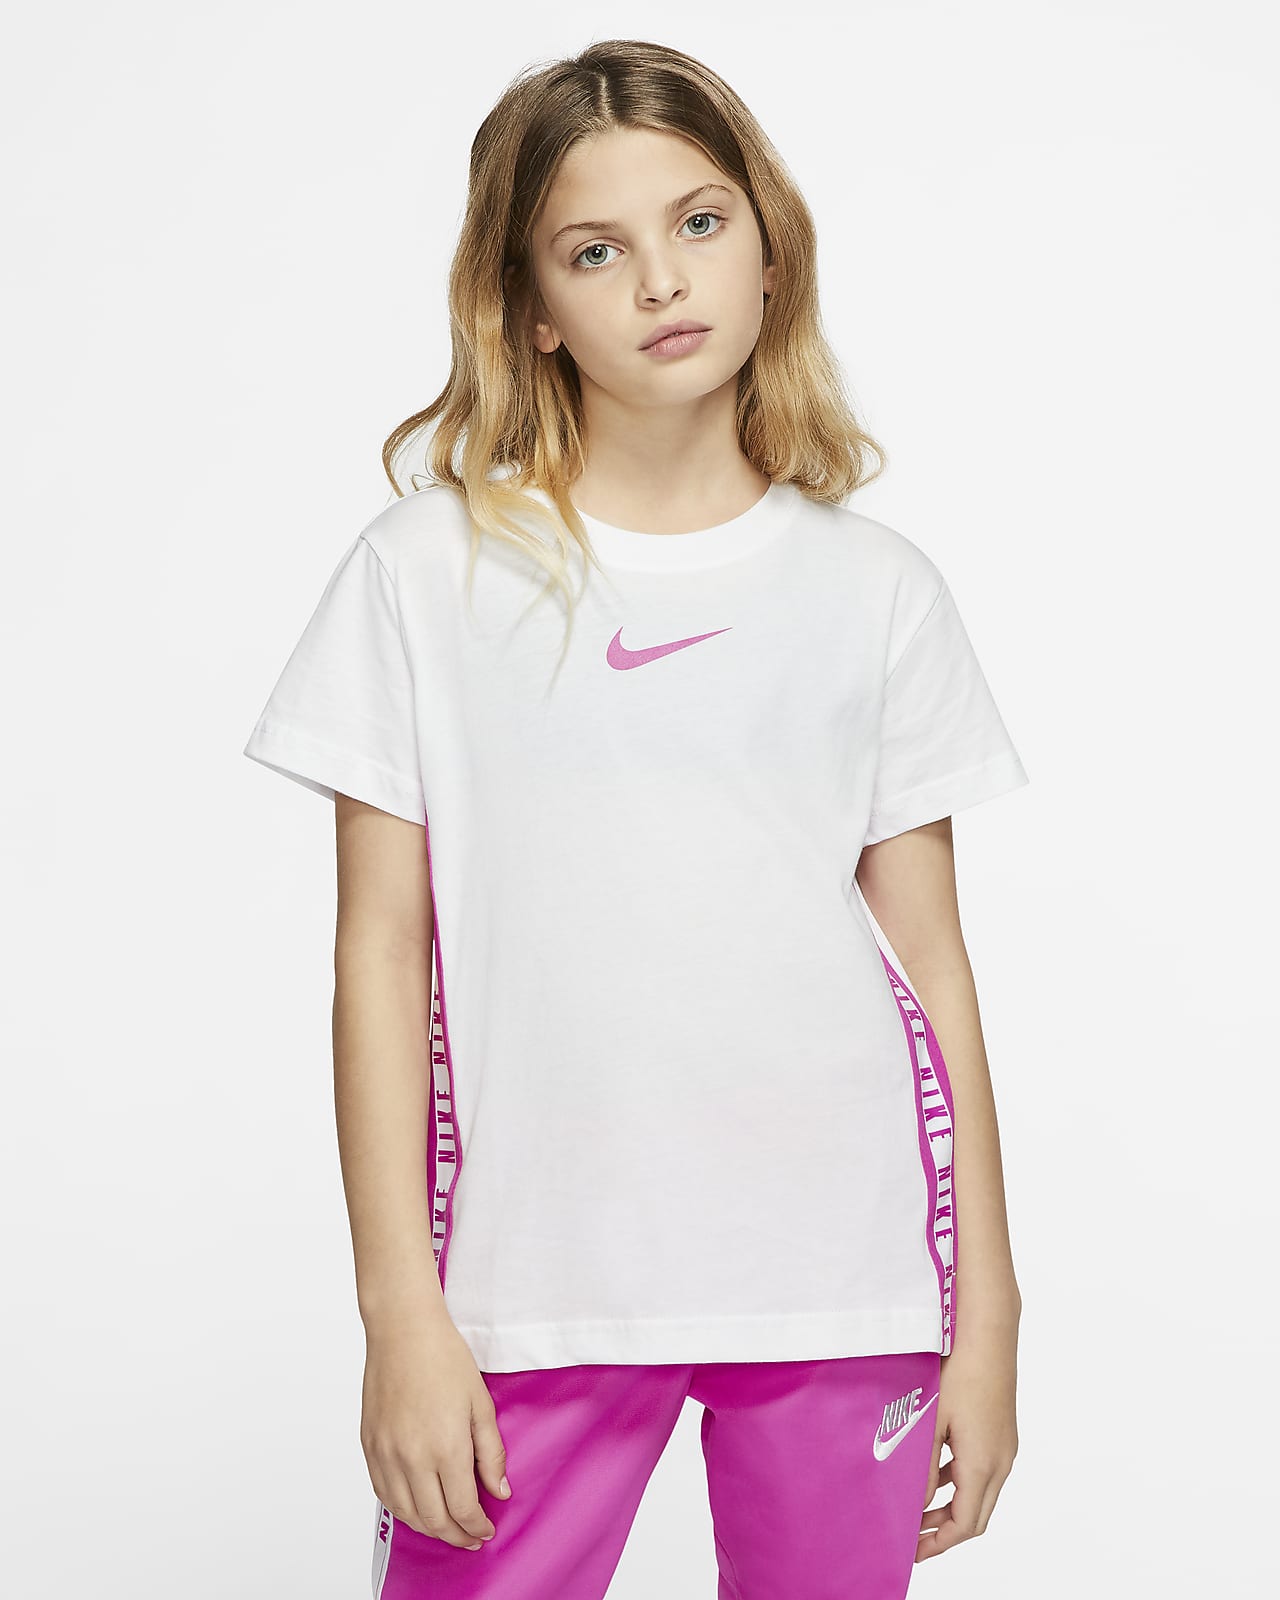 Girls' Nike Tops